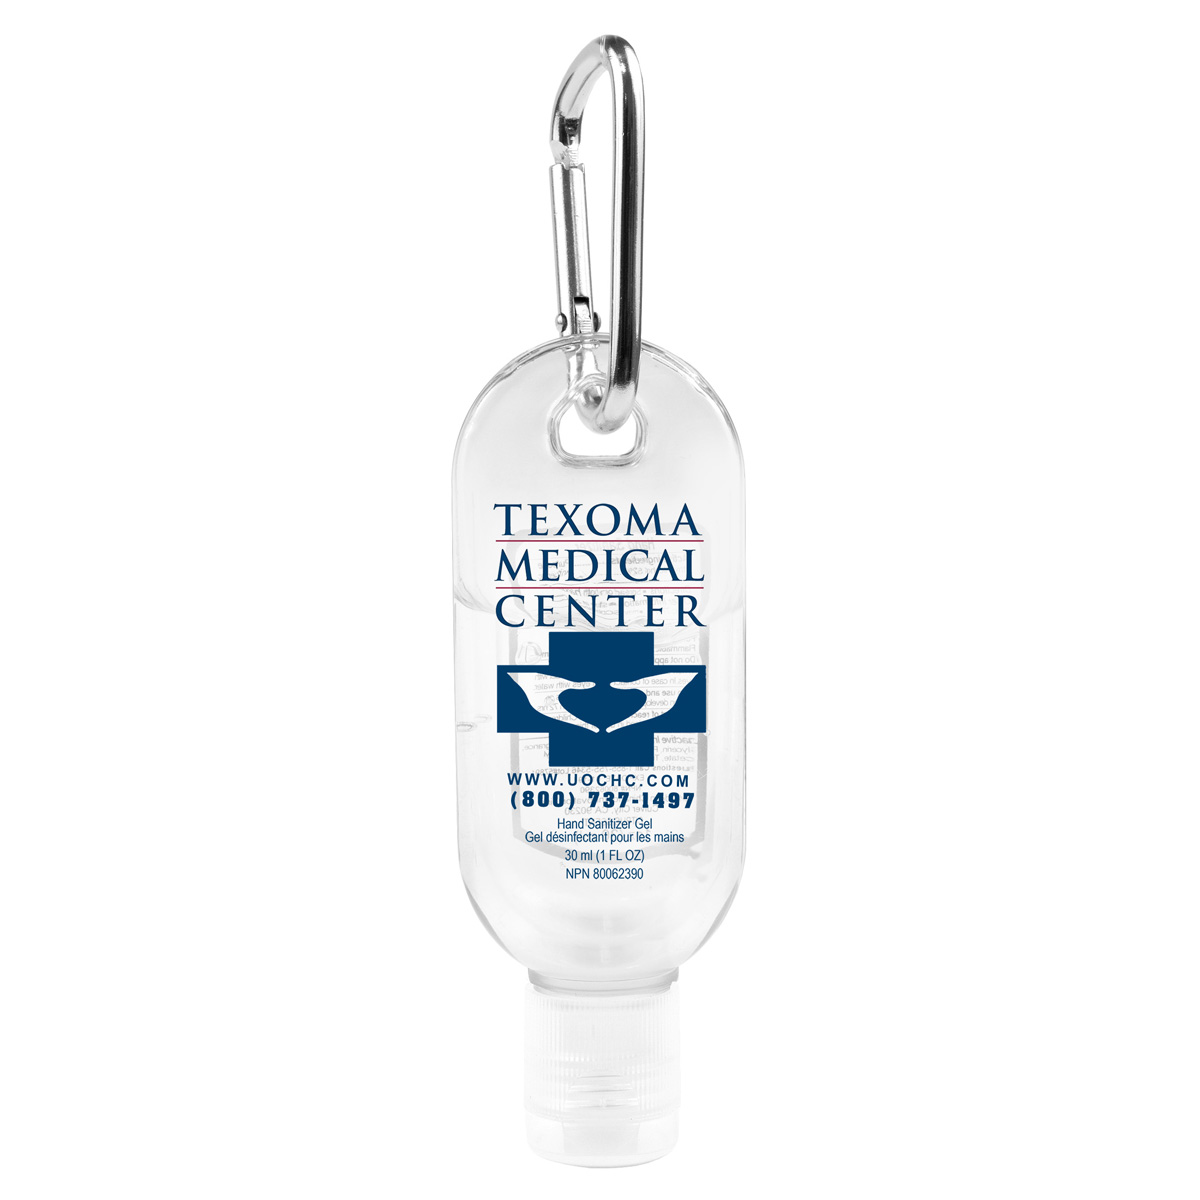 “SANGO” 1.0 oz Hand Sanitizer Antibacterial Gel in Flip-Top Bottle with Carabiner